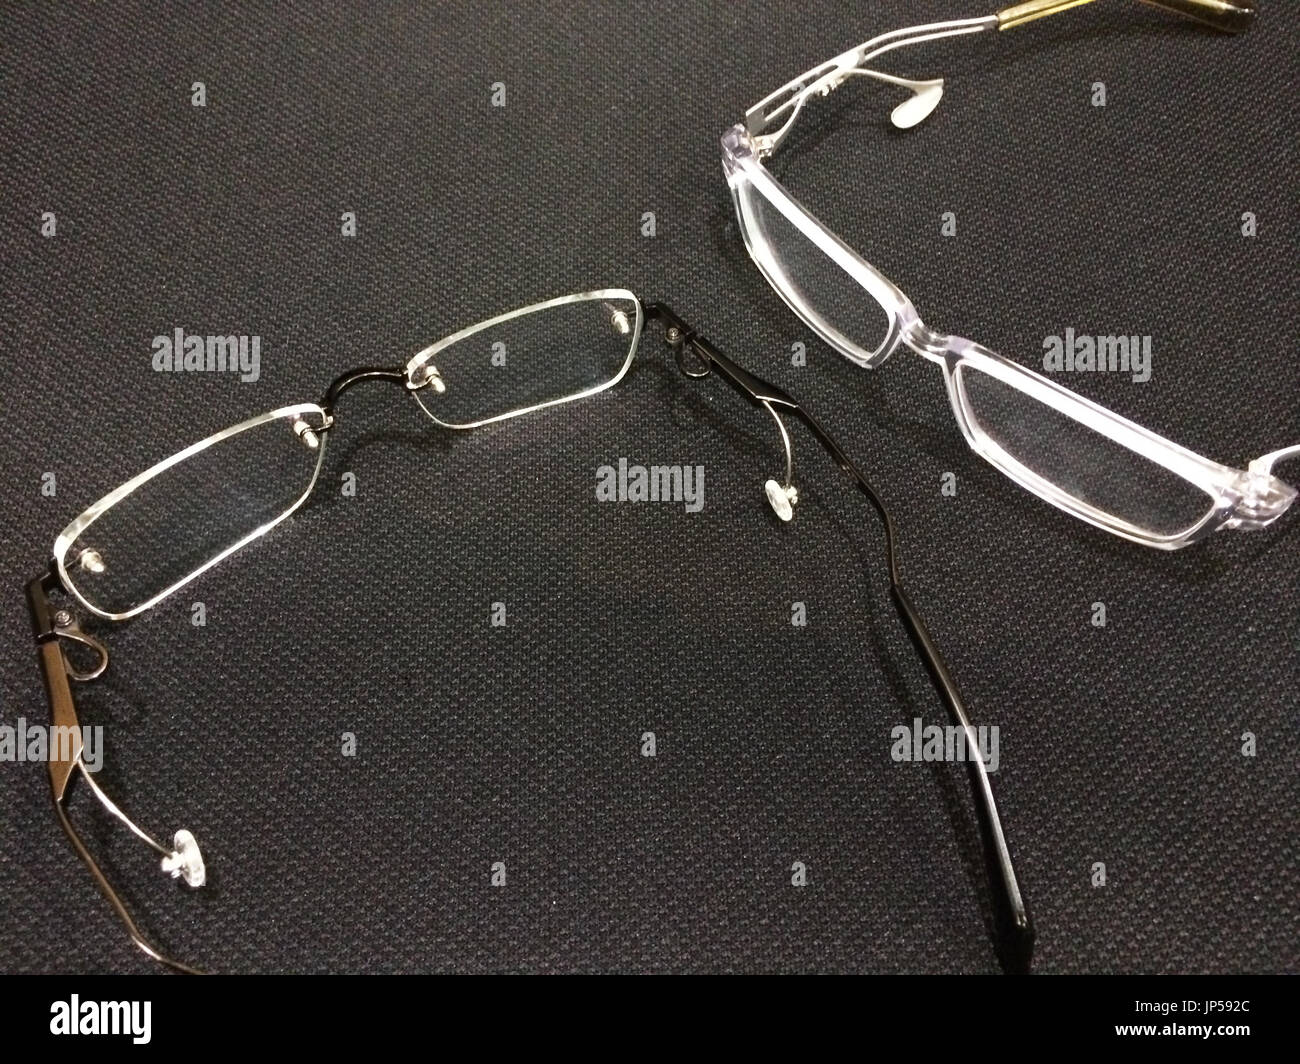 TOKYO, Japan - Brillen ohne Nasenpads, gemacht vom japanischen optischen  Rahmen Maker Brücke Corp. in der Präfektur Fukui, Zentraljapan, erscheinen  am 16. Oktober 2014. Die neuartige Frames, die besondere Unterstützung  Anlagen an